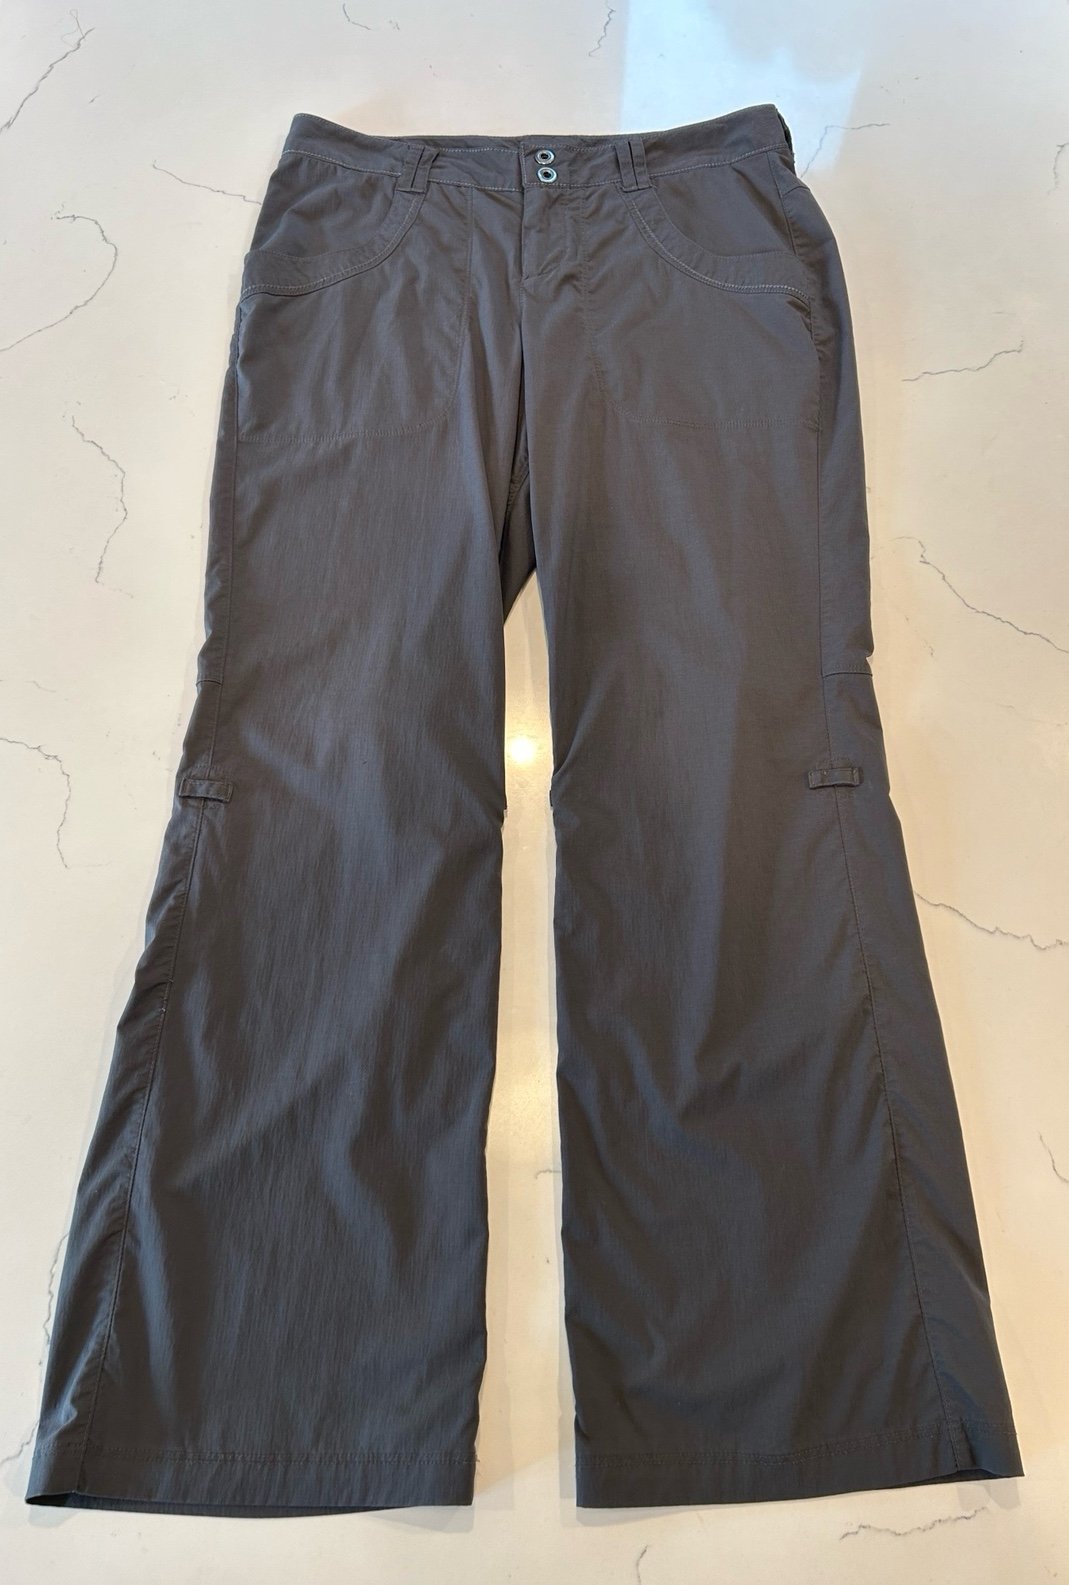 Cheap REI Pants Women´s 6P Gray Nylon Stretch Pock